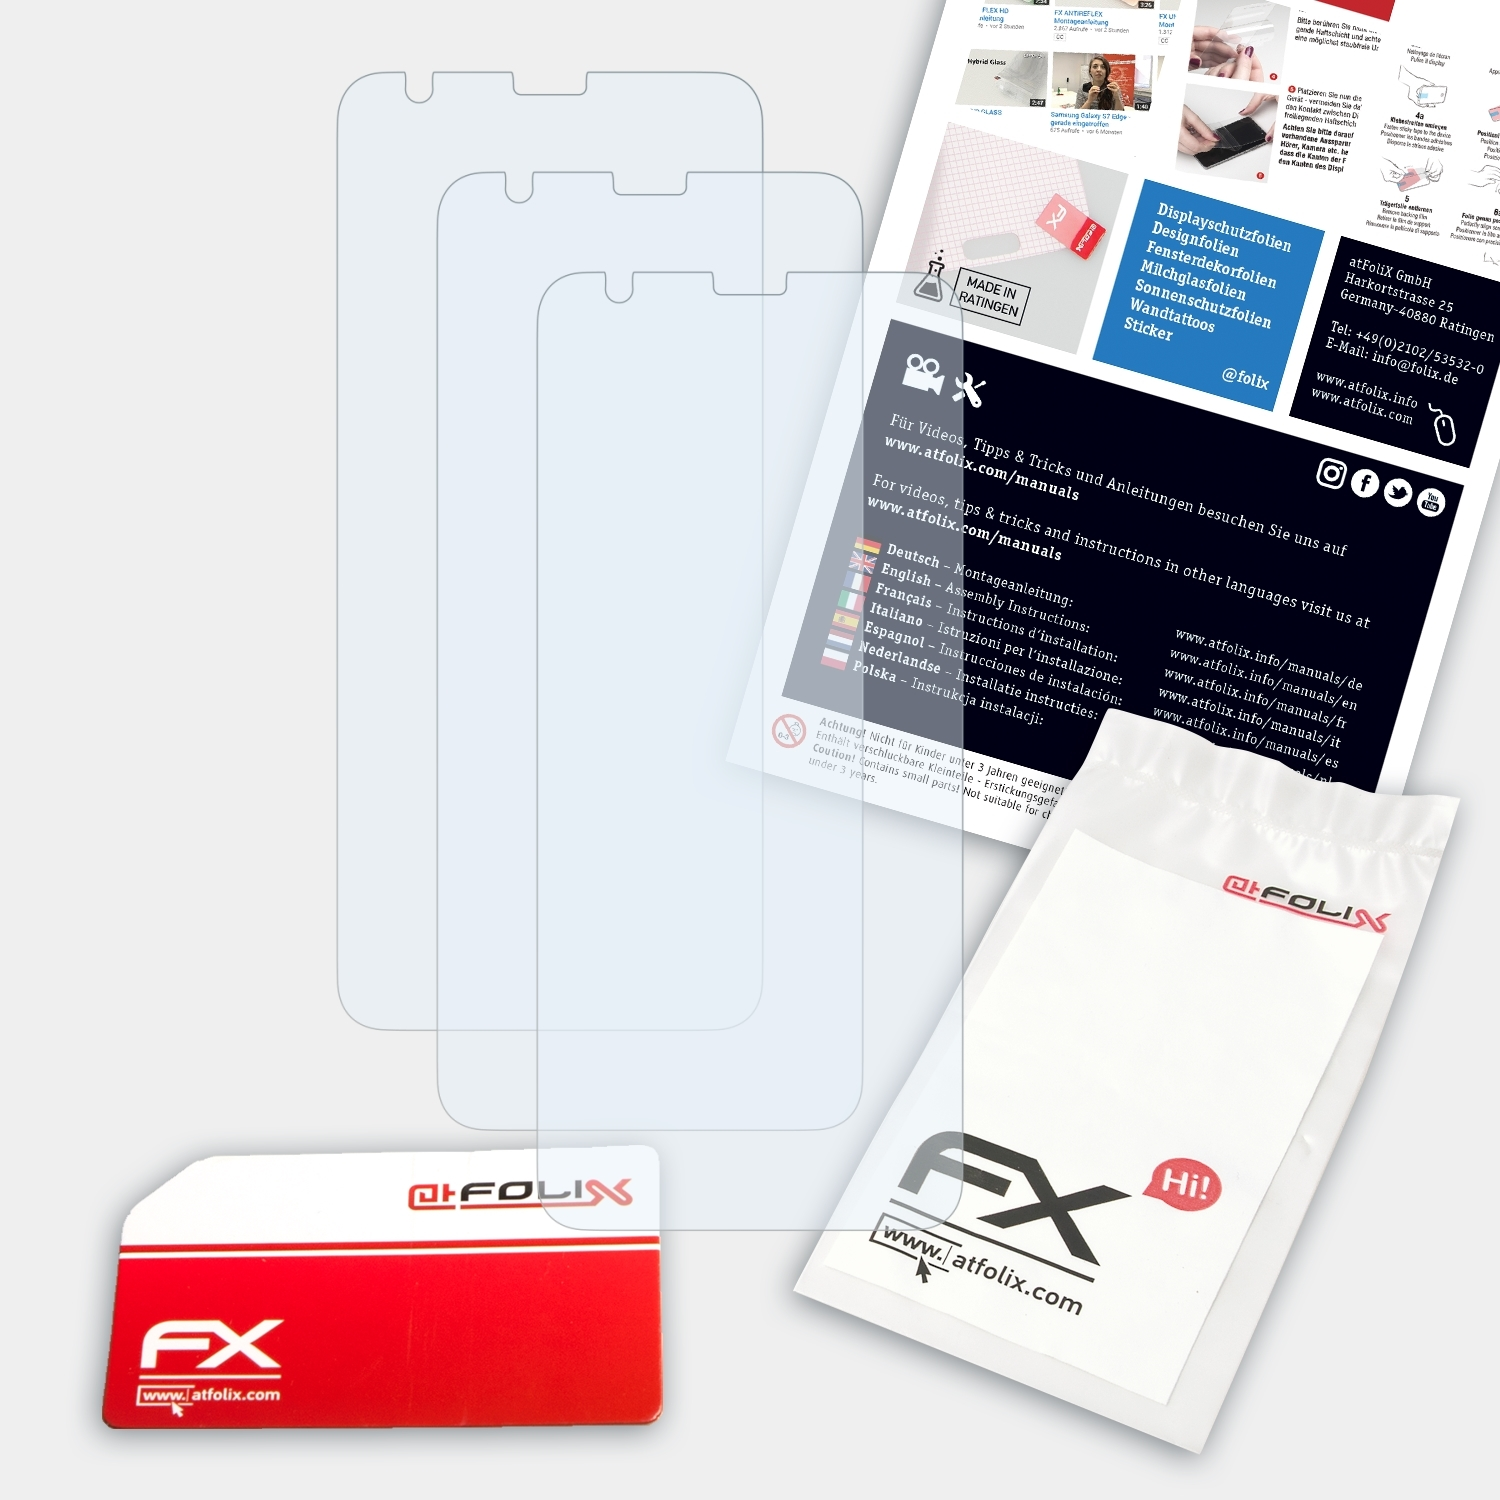 ATFOLIX Displayschutz(für S1) Ulefone FX-Clear 3x